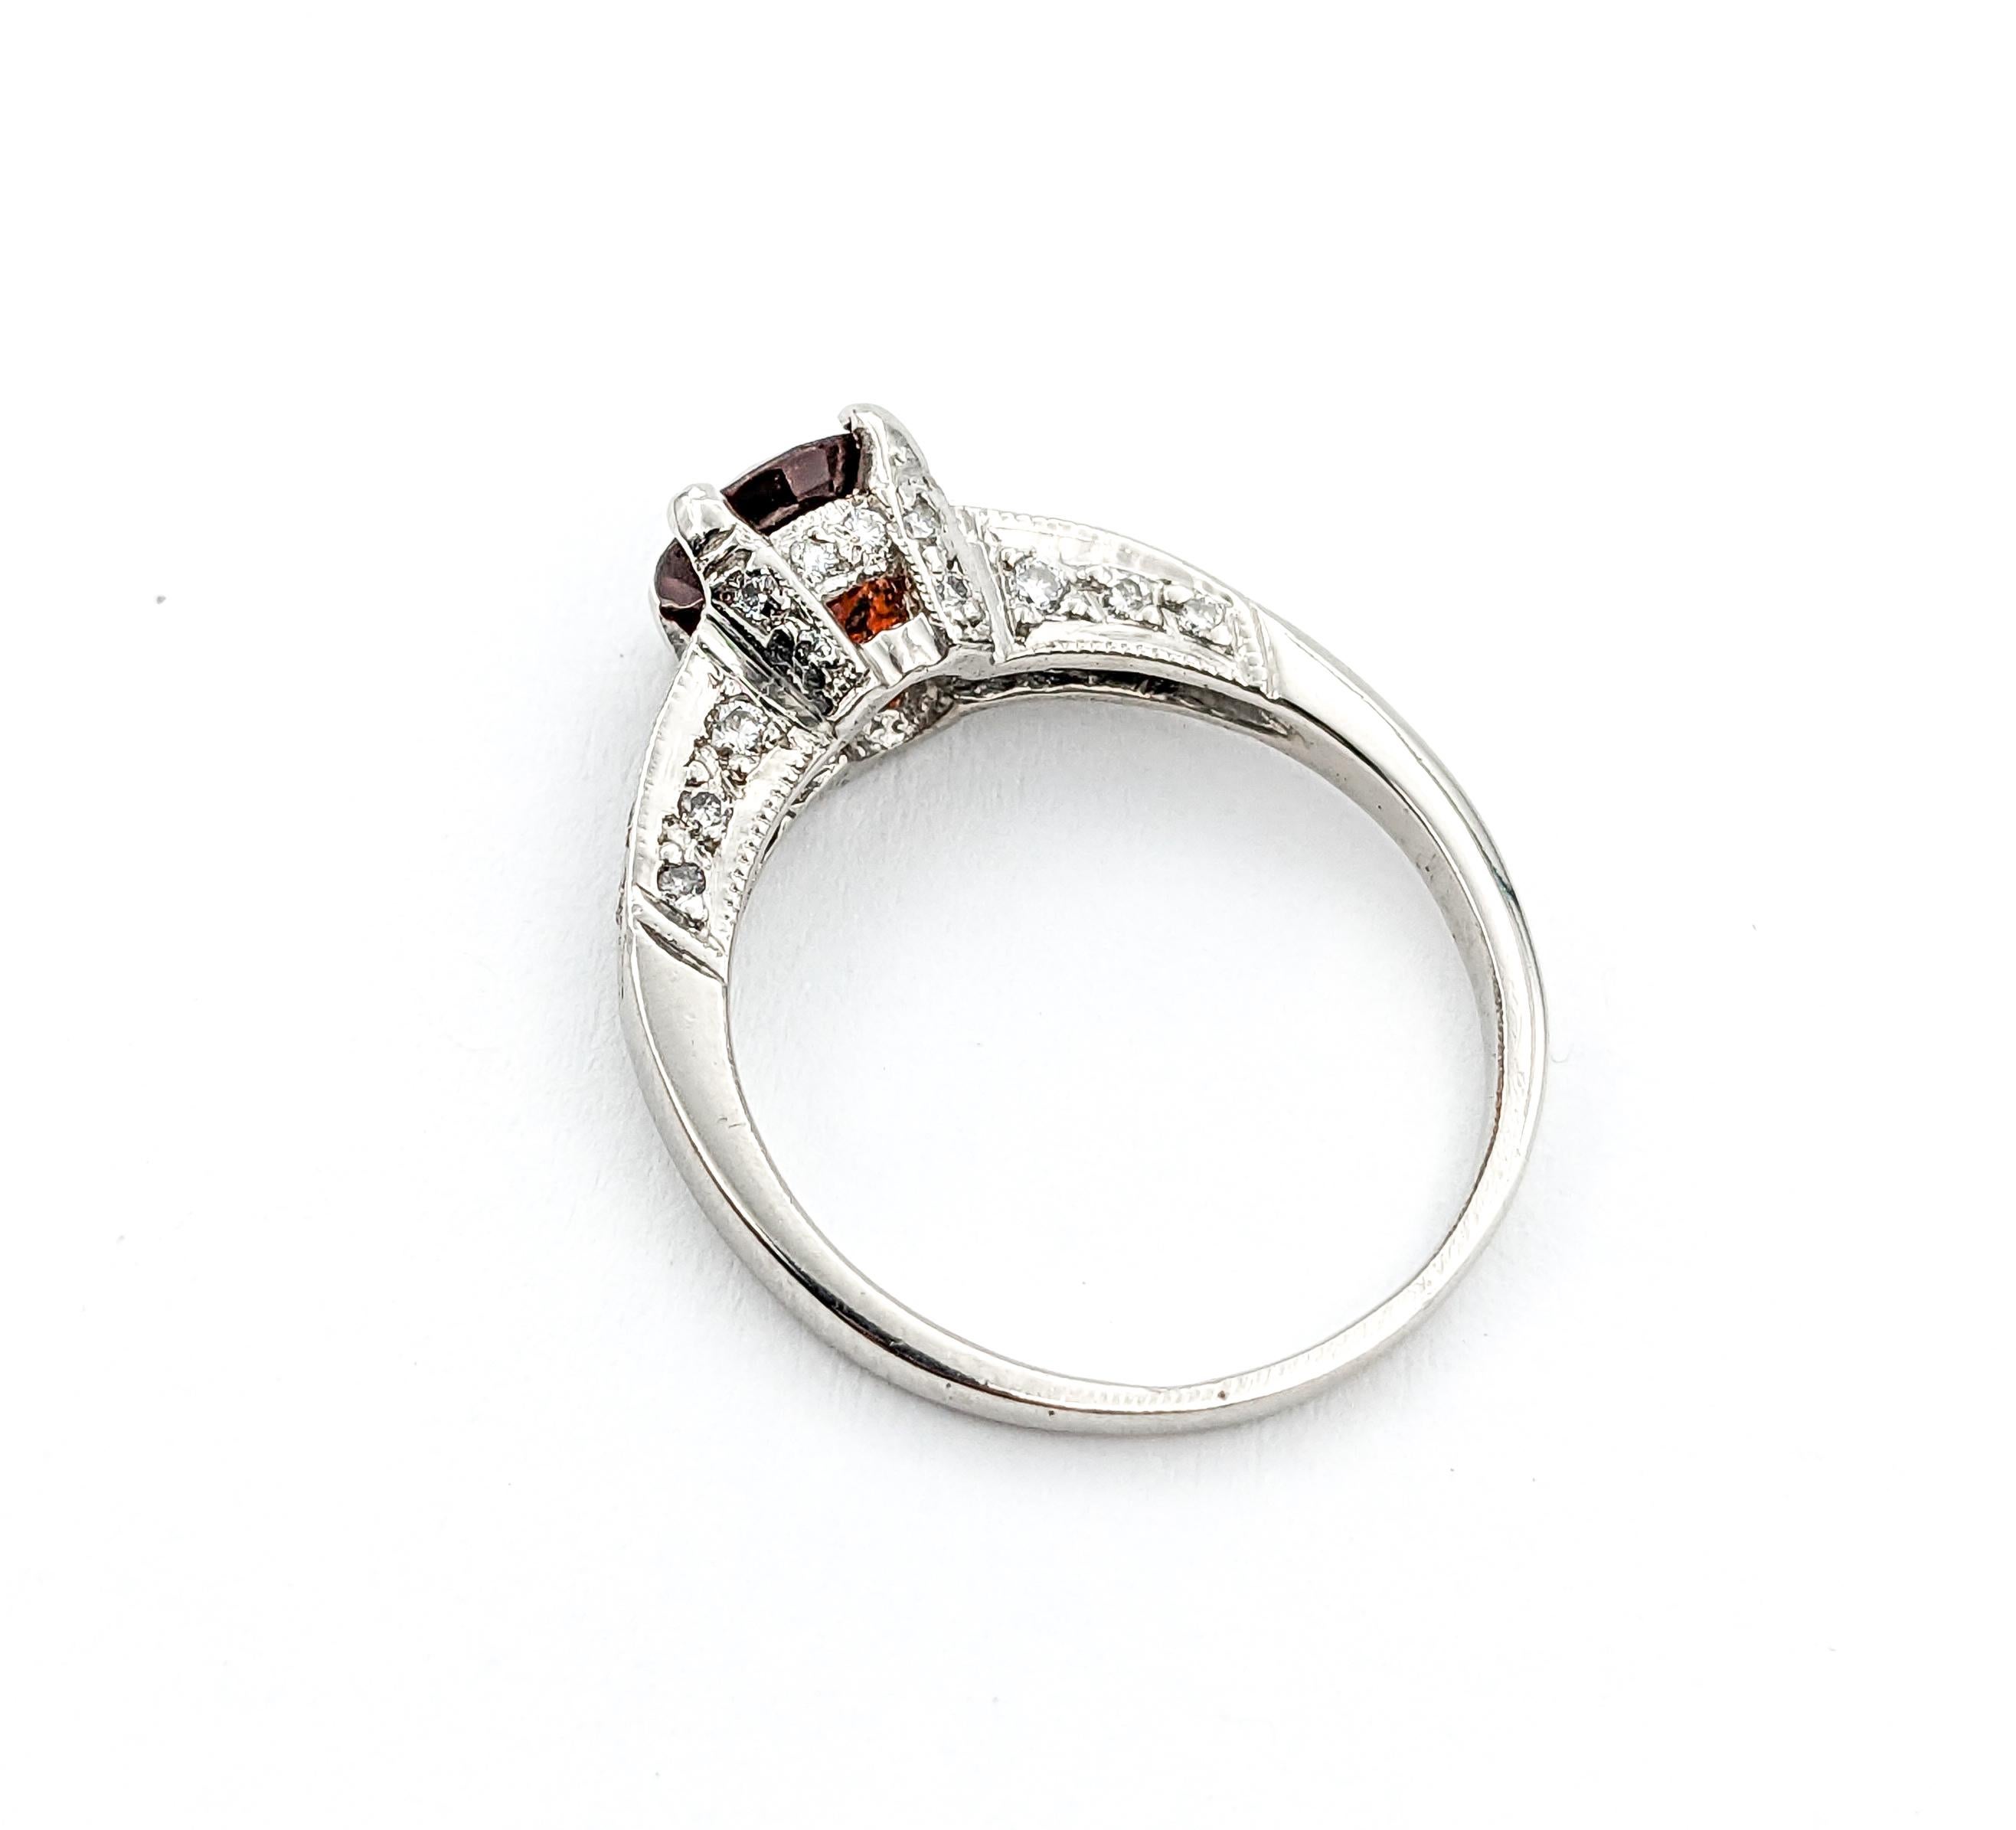 Designer Tacori 1.16ct Garnet & Diamond Ring In Platinum For Sale 4